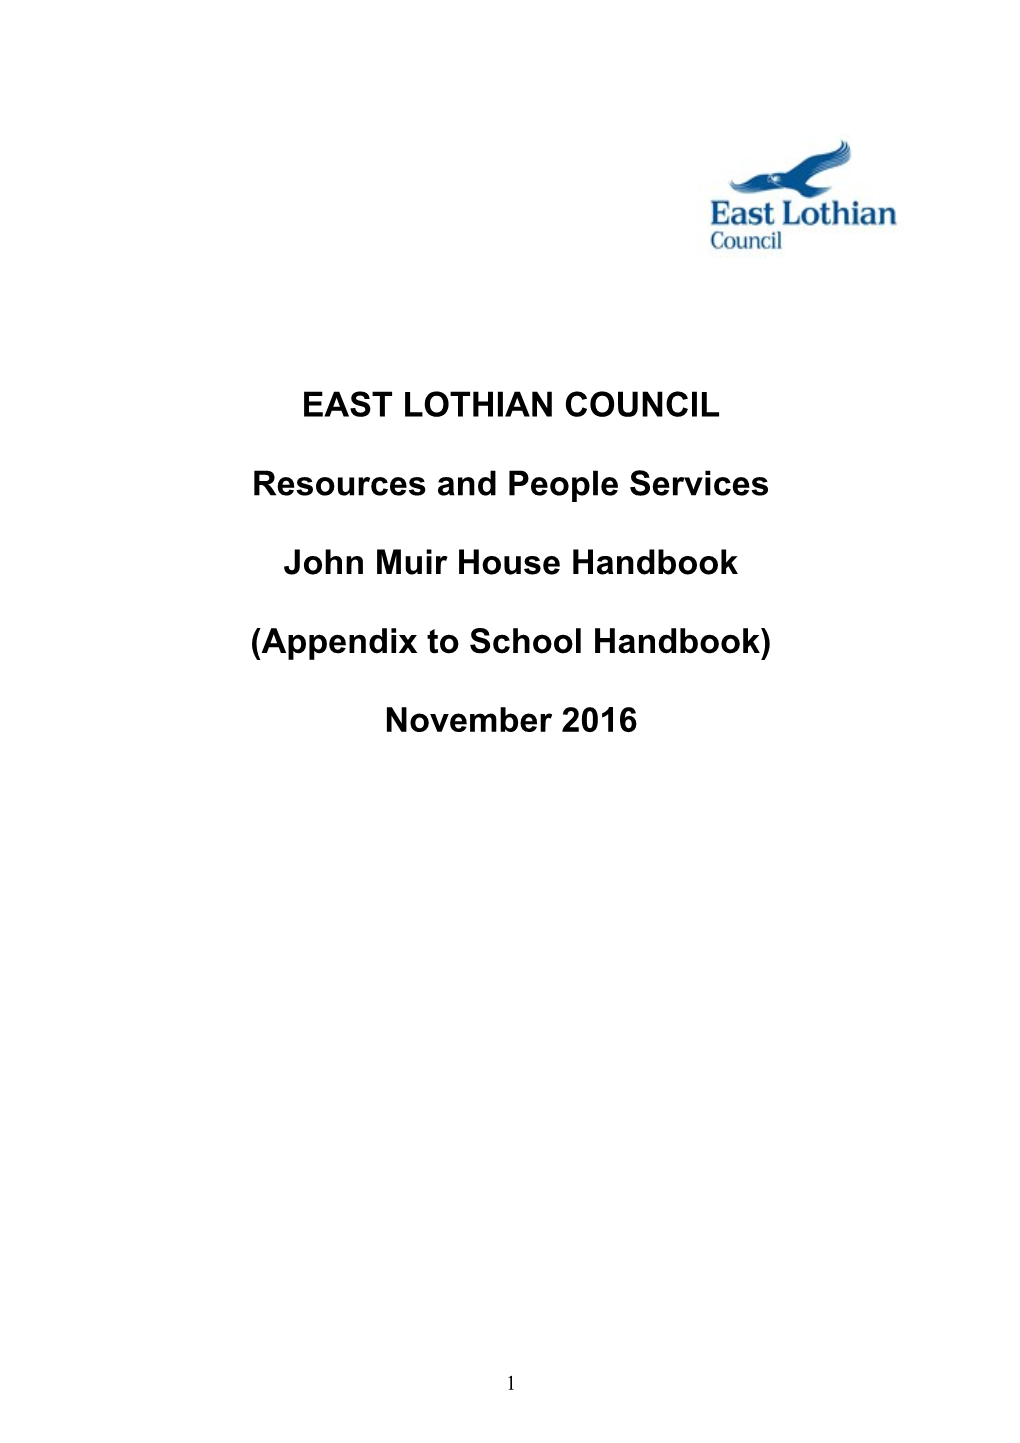 East Lothian Council s2